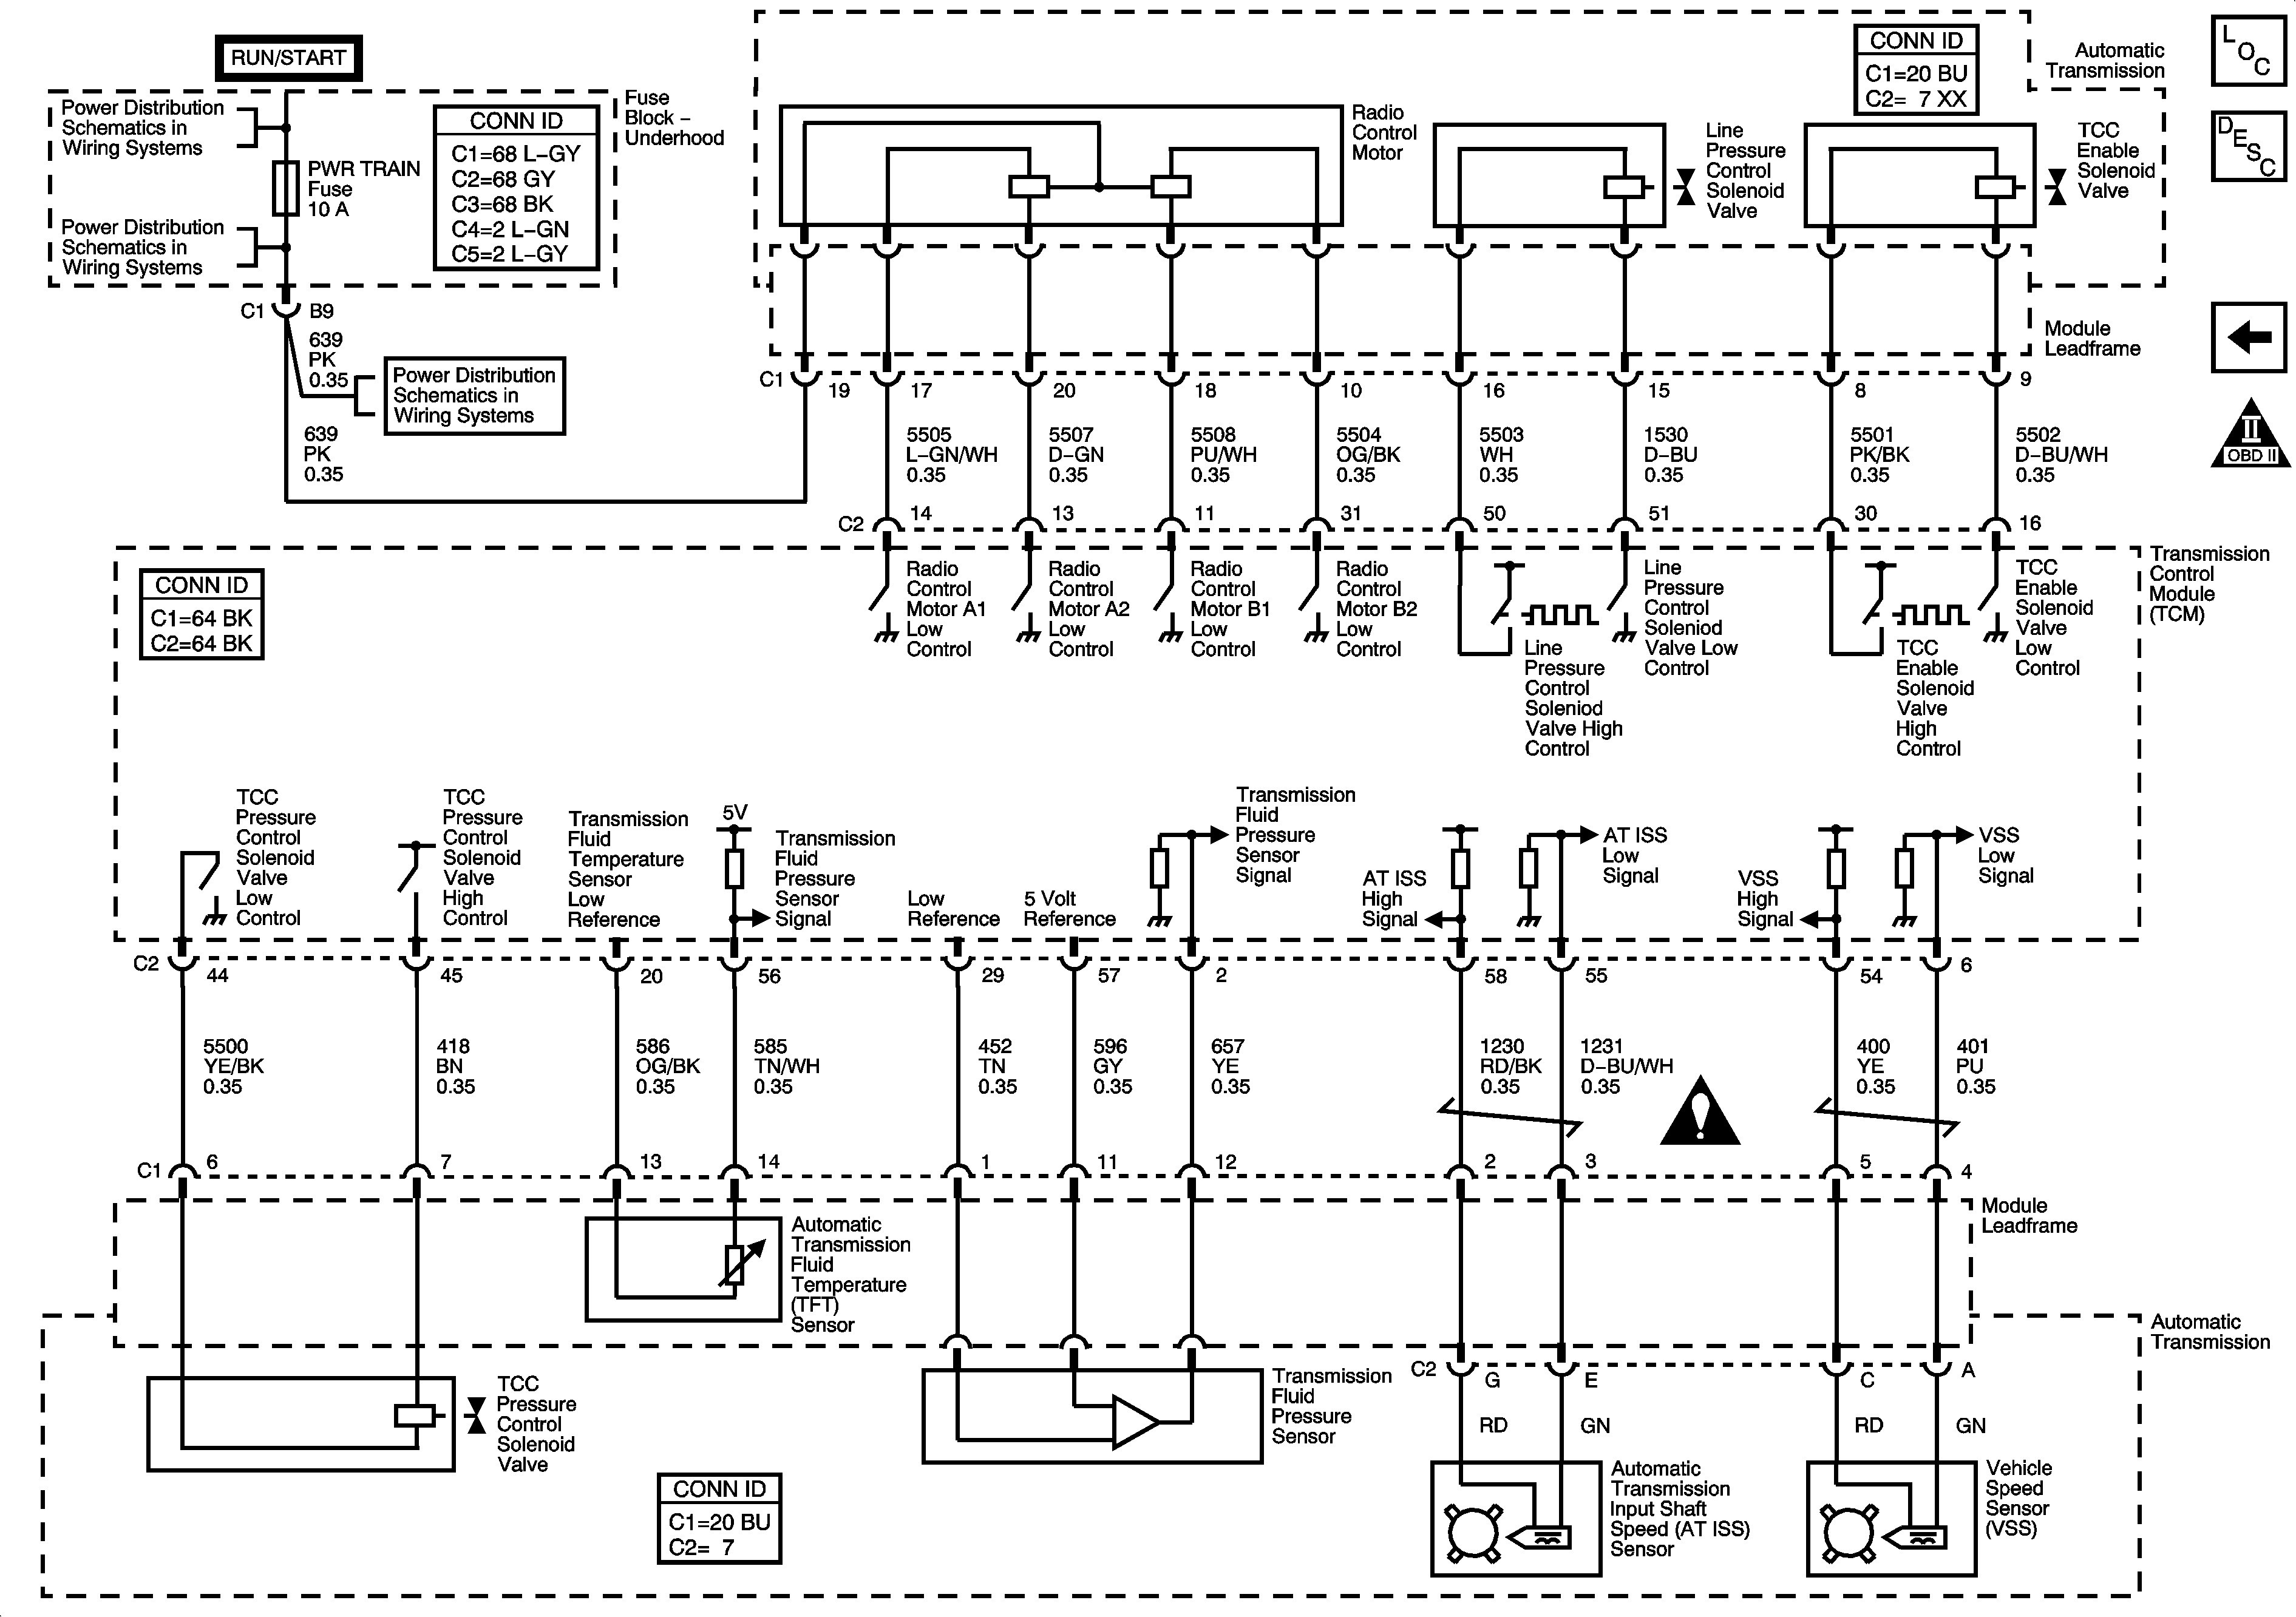 2003 Saturn Vue V6 Engine Diagram Saturn Transmission Diagram Wiring Library Of 2003 Saturn Vue V6 Engine Diagram